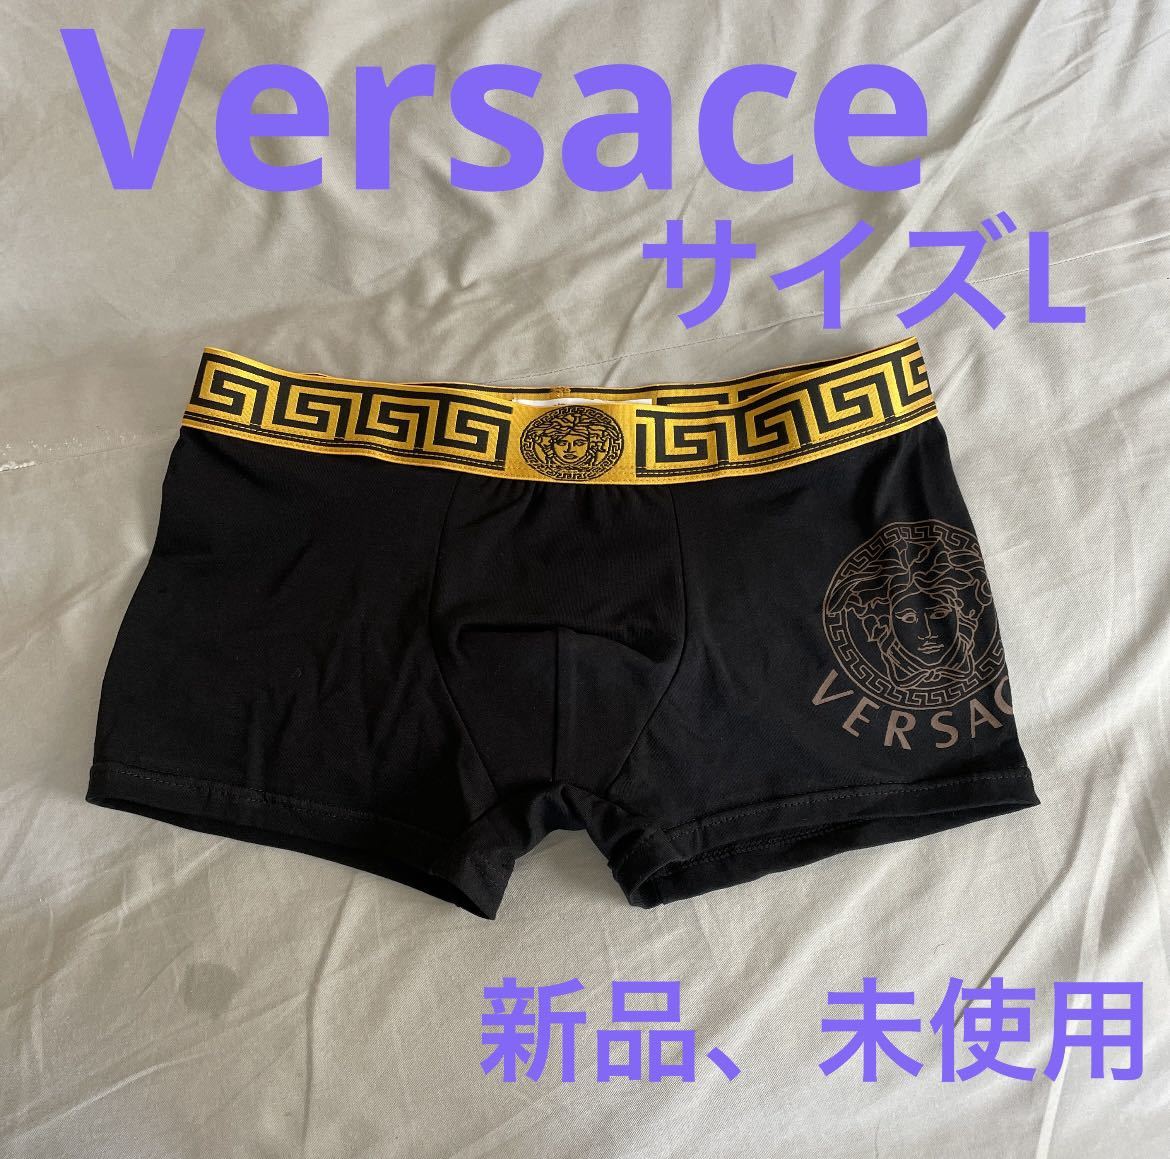 全品送料0円 Versace ヴェルサーチ メデューサボクサーパンツ サイズL